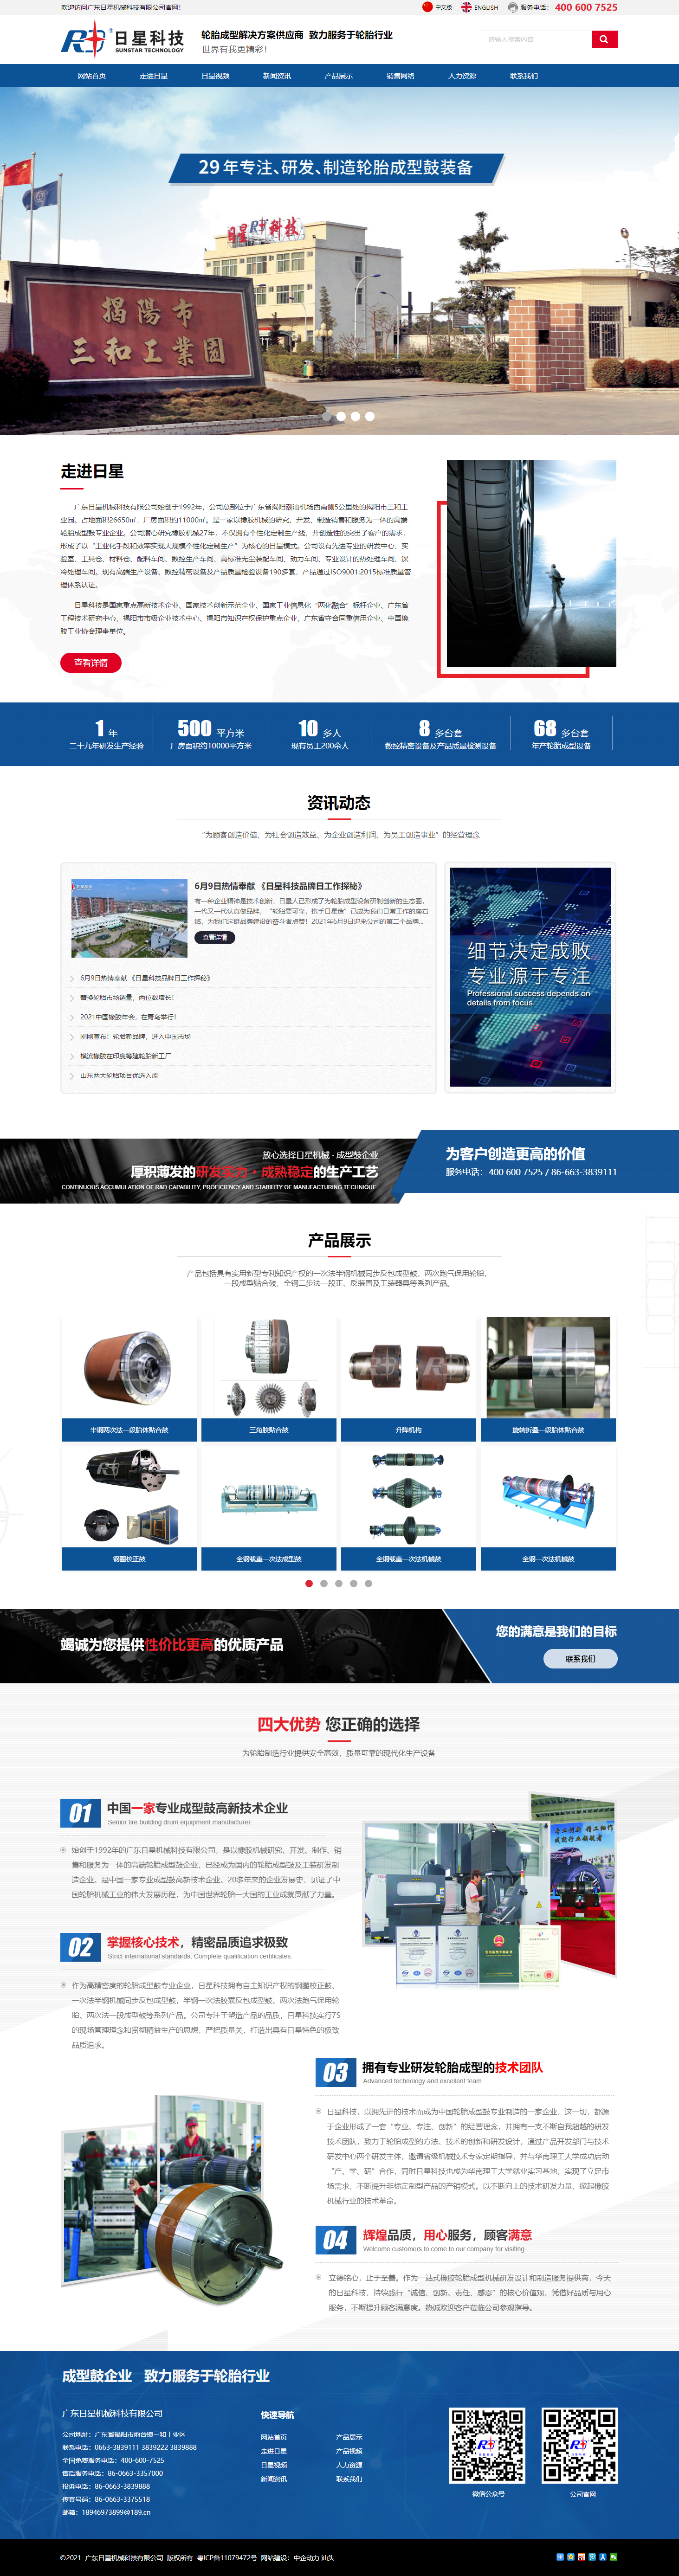 广东日星机械科技有限公司网站案例